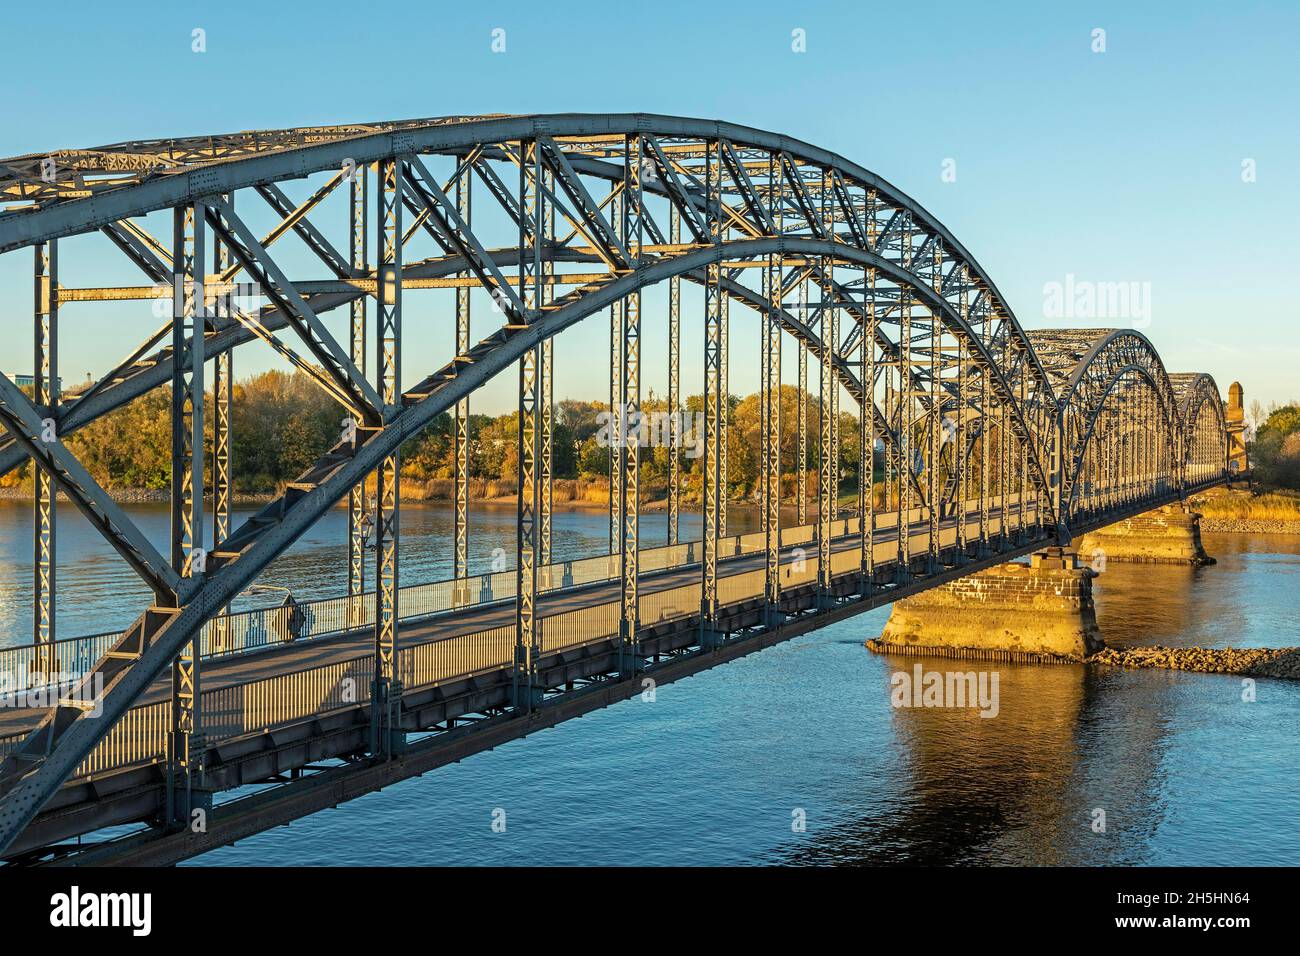 Außenansicht, Alte Harburger Elbbrücke, Stahlbogenbrücke, Süderelbbrücke, Harburg, Hamburg, Deutschland Stockfoto